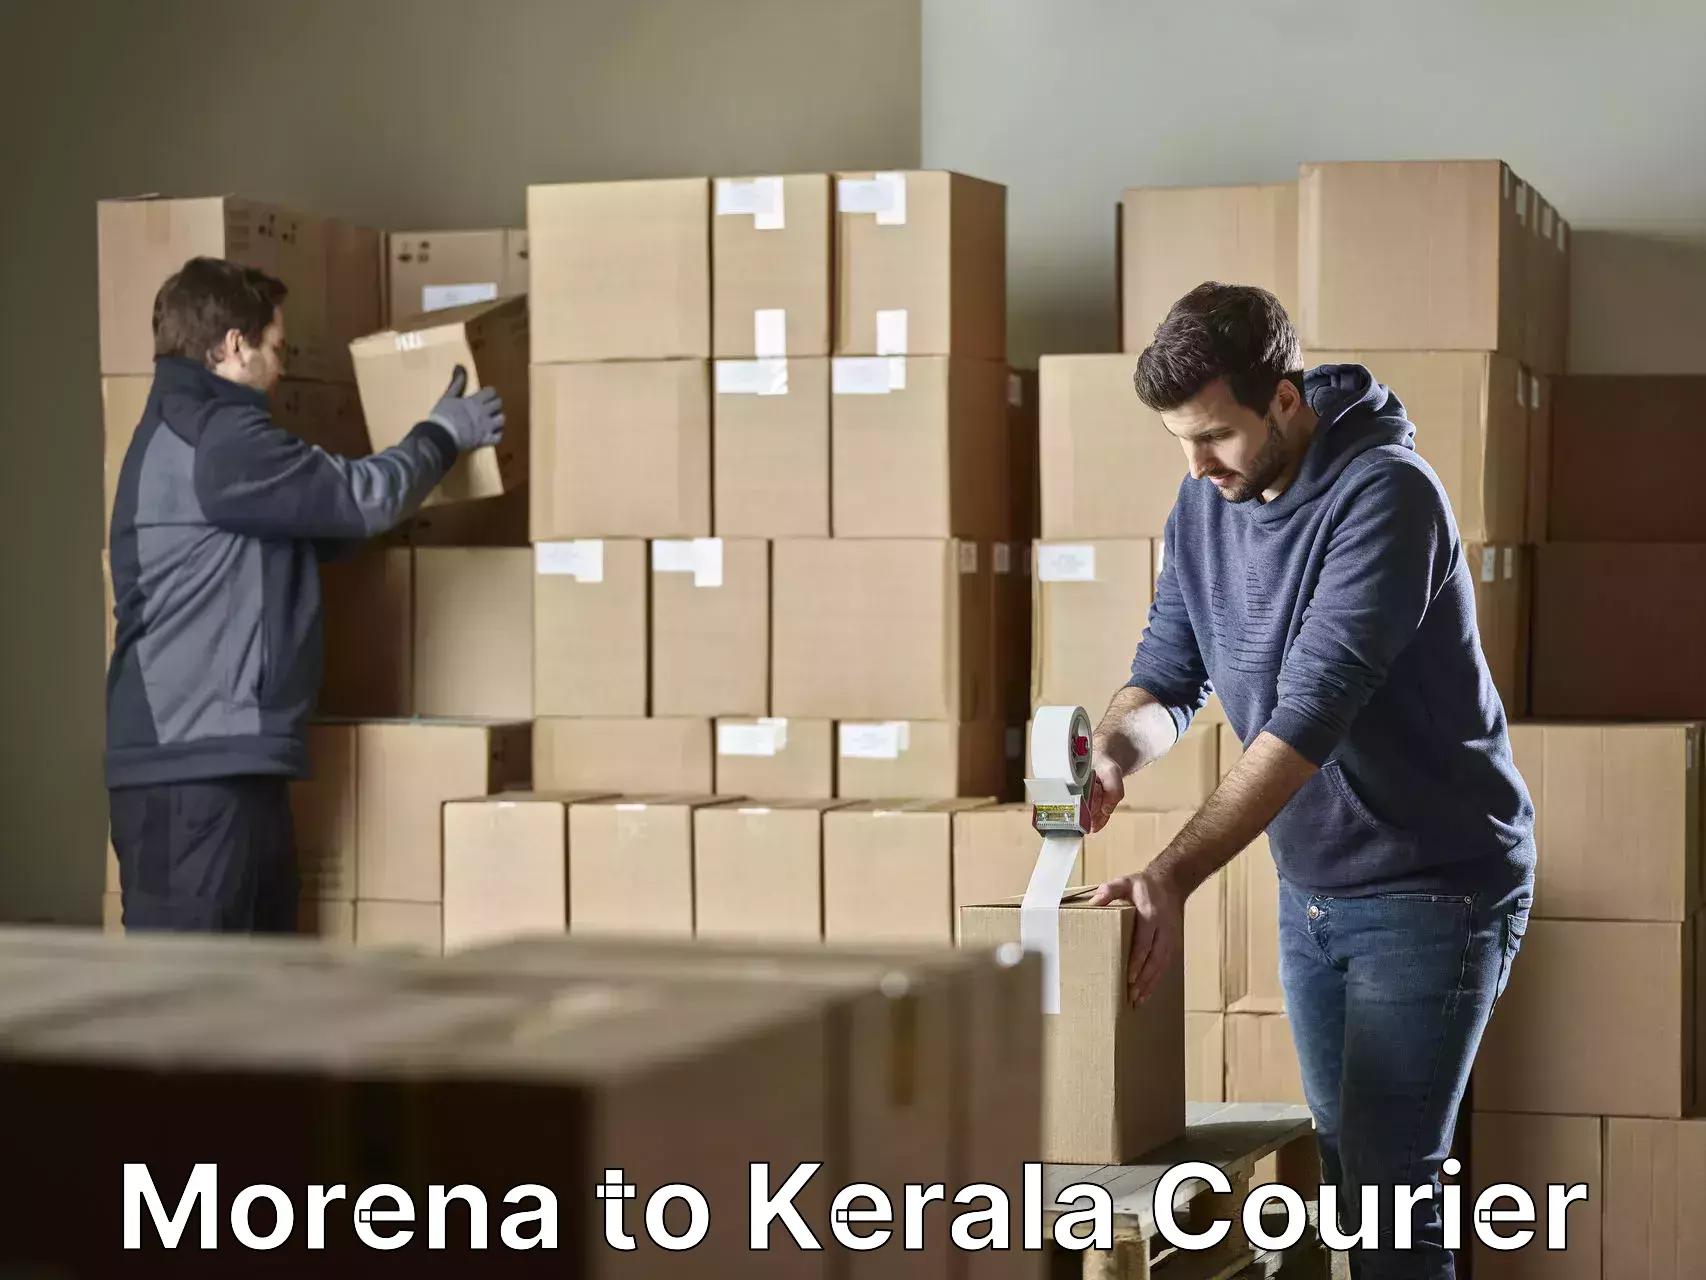 Furniture transport professionals Morena to Trivandrum